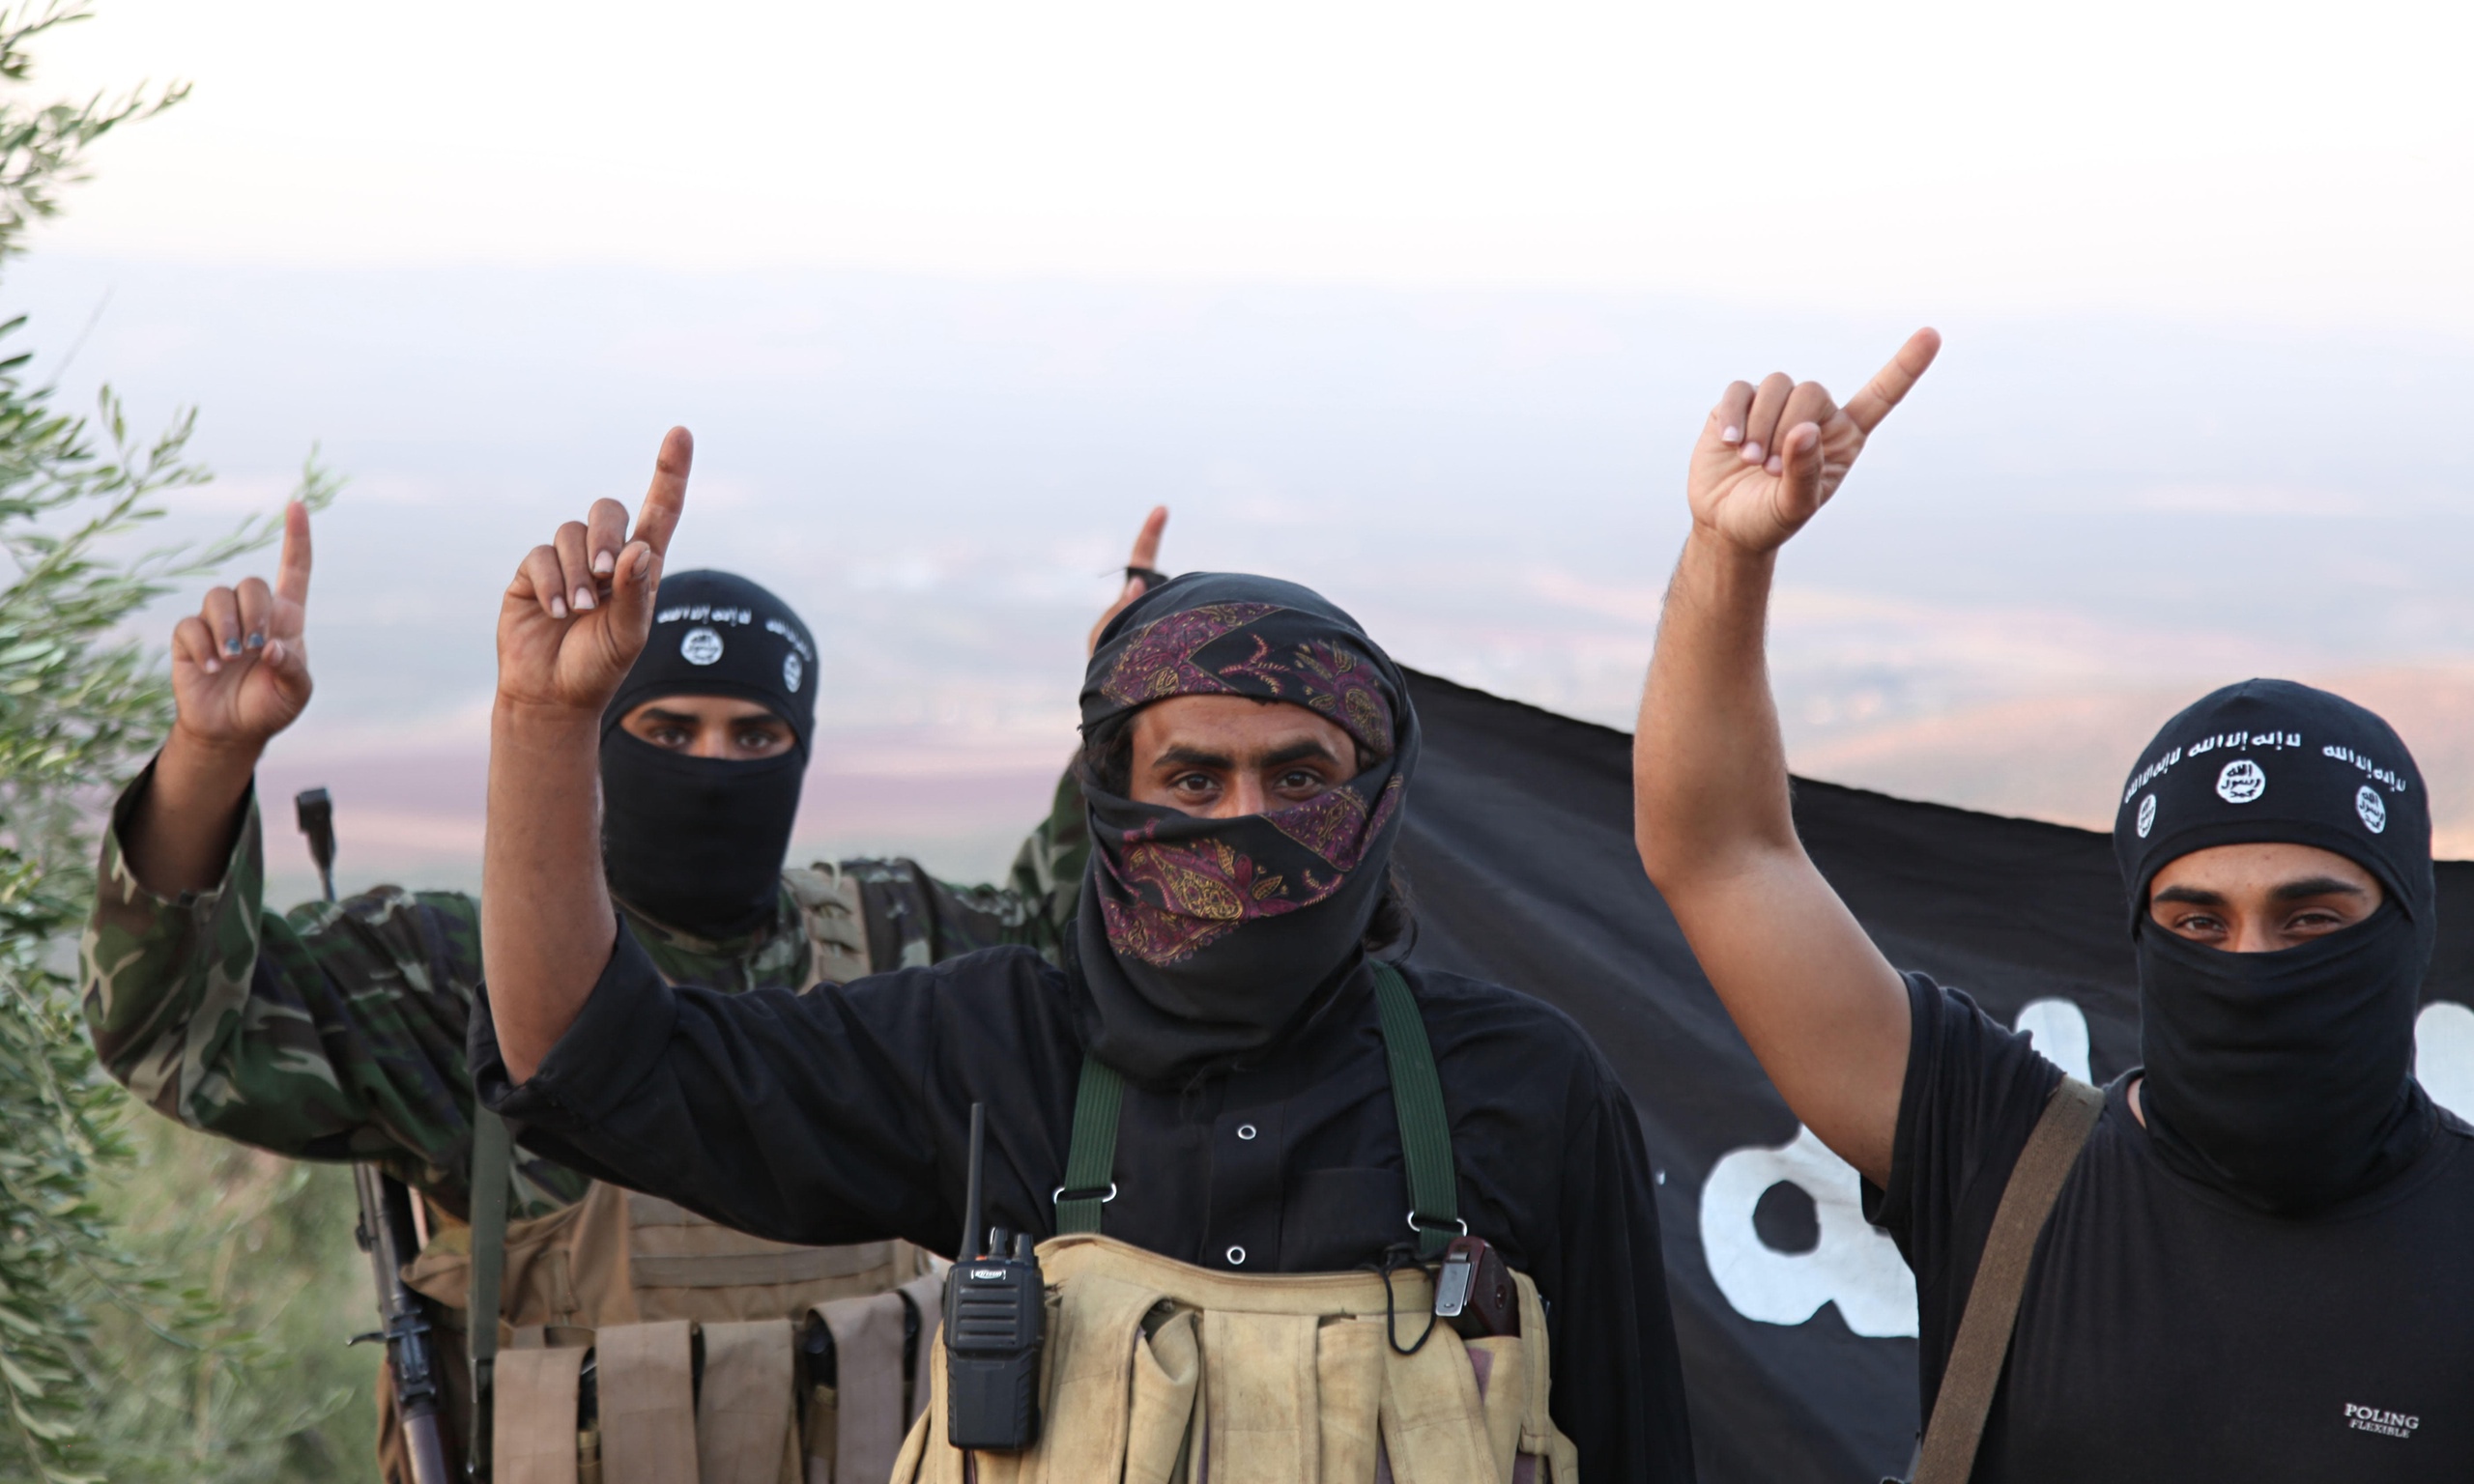 Thời gian gần đây, nhiều thành viên cấp cao của khủng bố IS đã bị tiêu diệt trong các cuộc không kích.